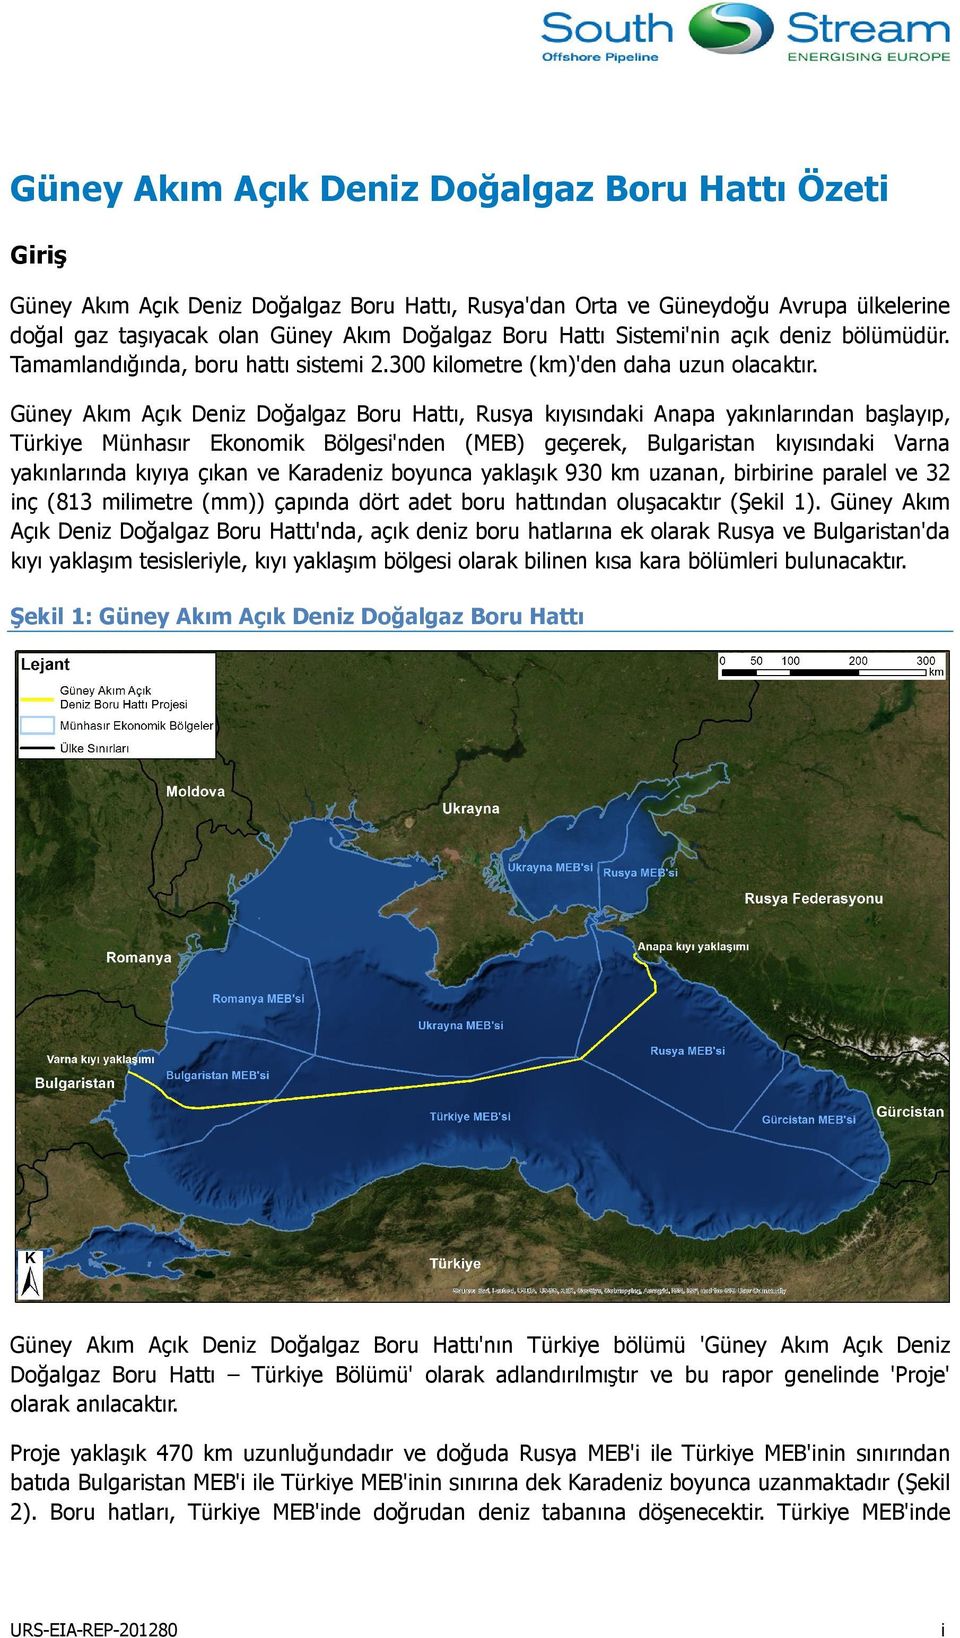 Güney Akım Açık Deniz Doğalgaz Boru Hattı, Rusya kıyısındaki Anapa yakınlarından başlayıp, Türkiye Münhasır Ekonomik Bölgesi'nden (MEB) geçerek, Bulgaristan kıyısındaki Varna yakınlarında kıyıya